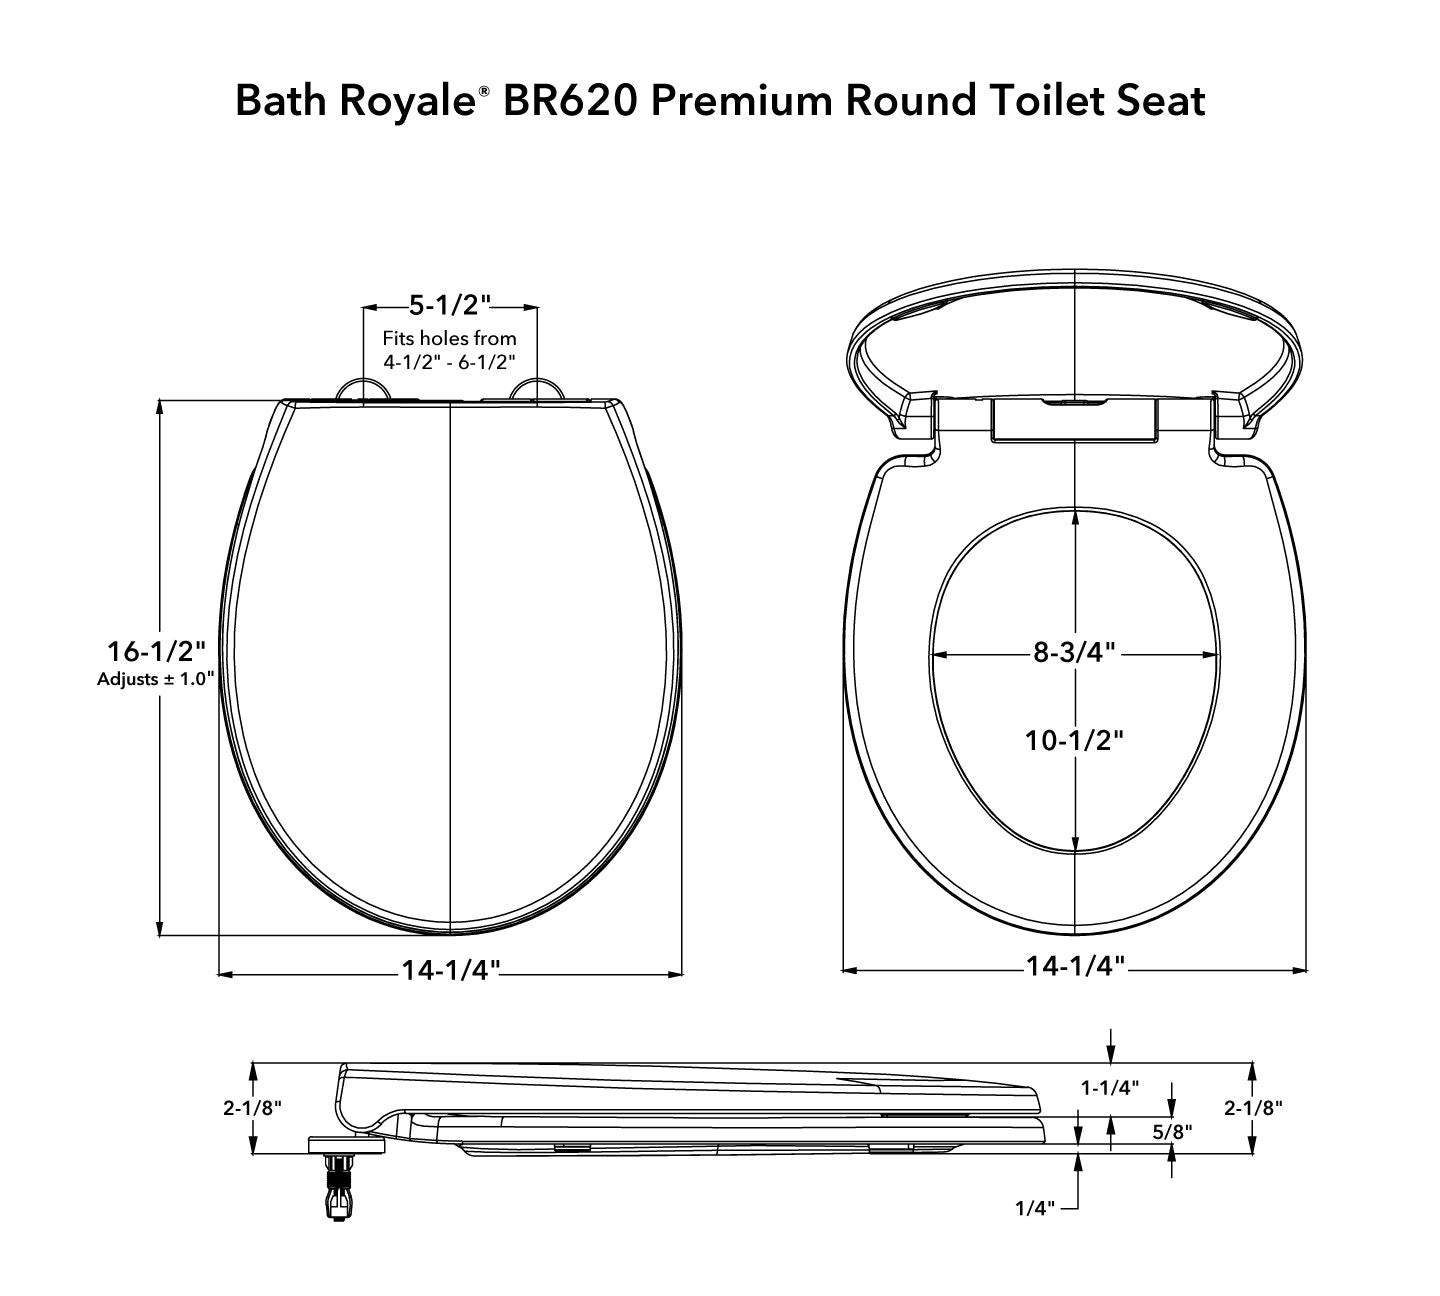 BR620 Premium Round Toilet Seat Dimensions